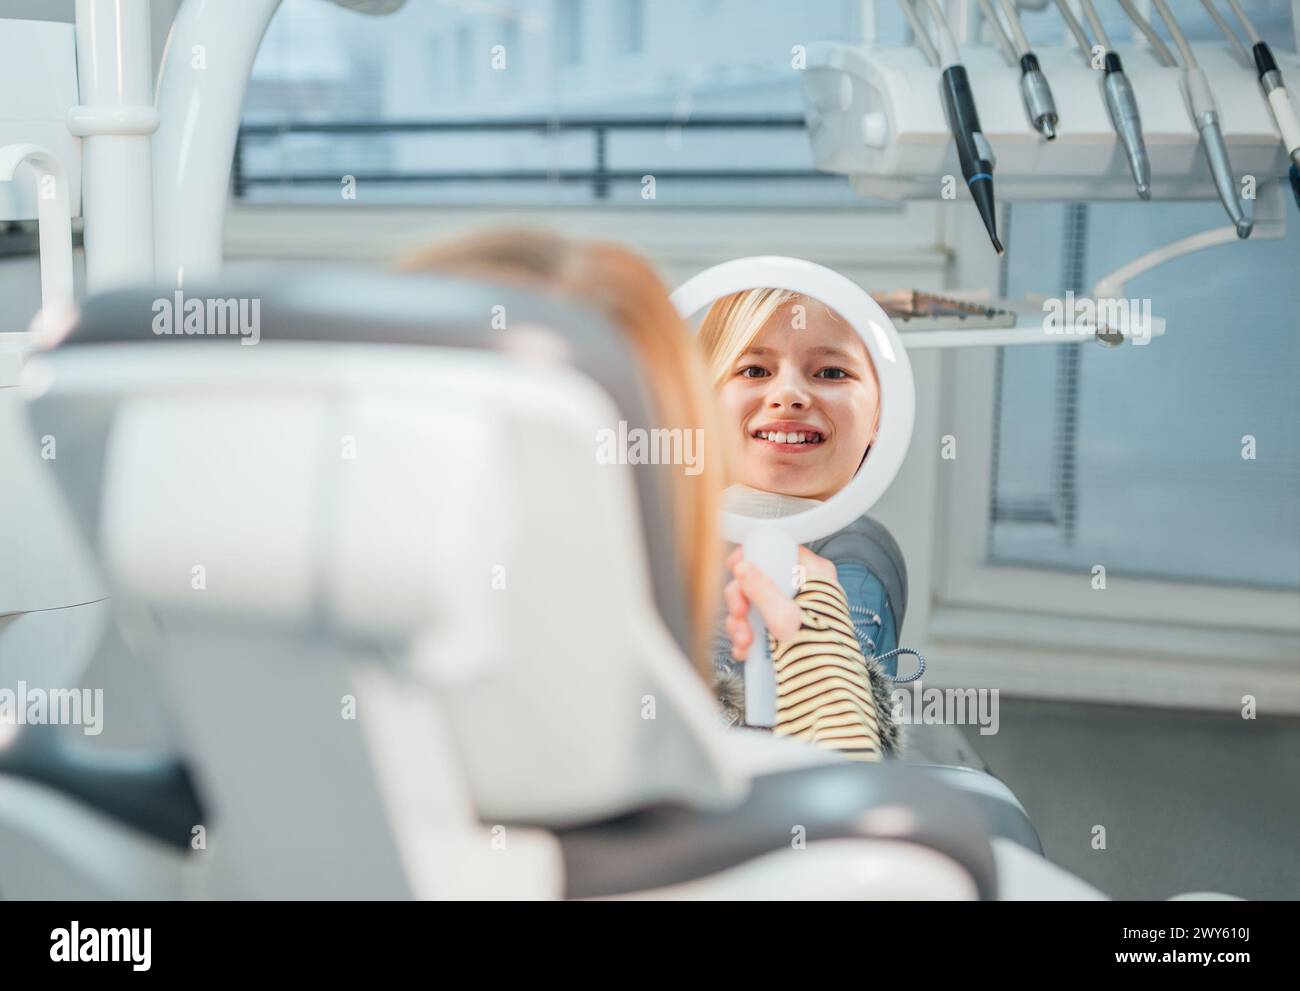 Kleines Mädchen, das im Stomatologie-Klinikstuhl sitzt und im Spiegel lächelt, der nach zahnärztlichen Eingriffen ihre Zähne zeigt. Gesundheitsfürsorge, Kindergesundheit und ich Stockfoto